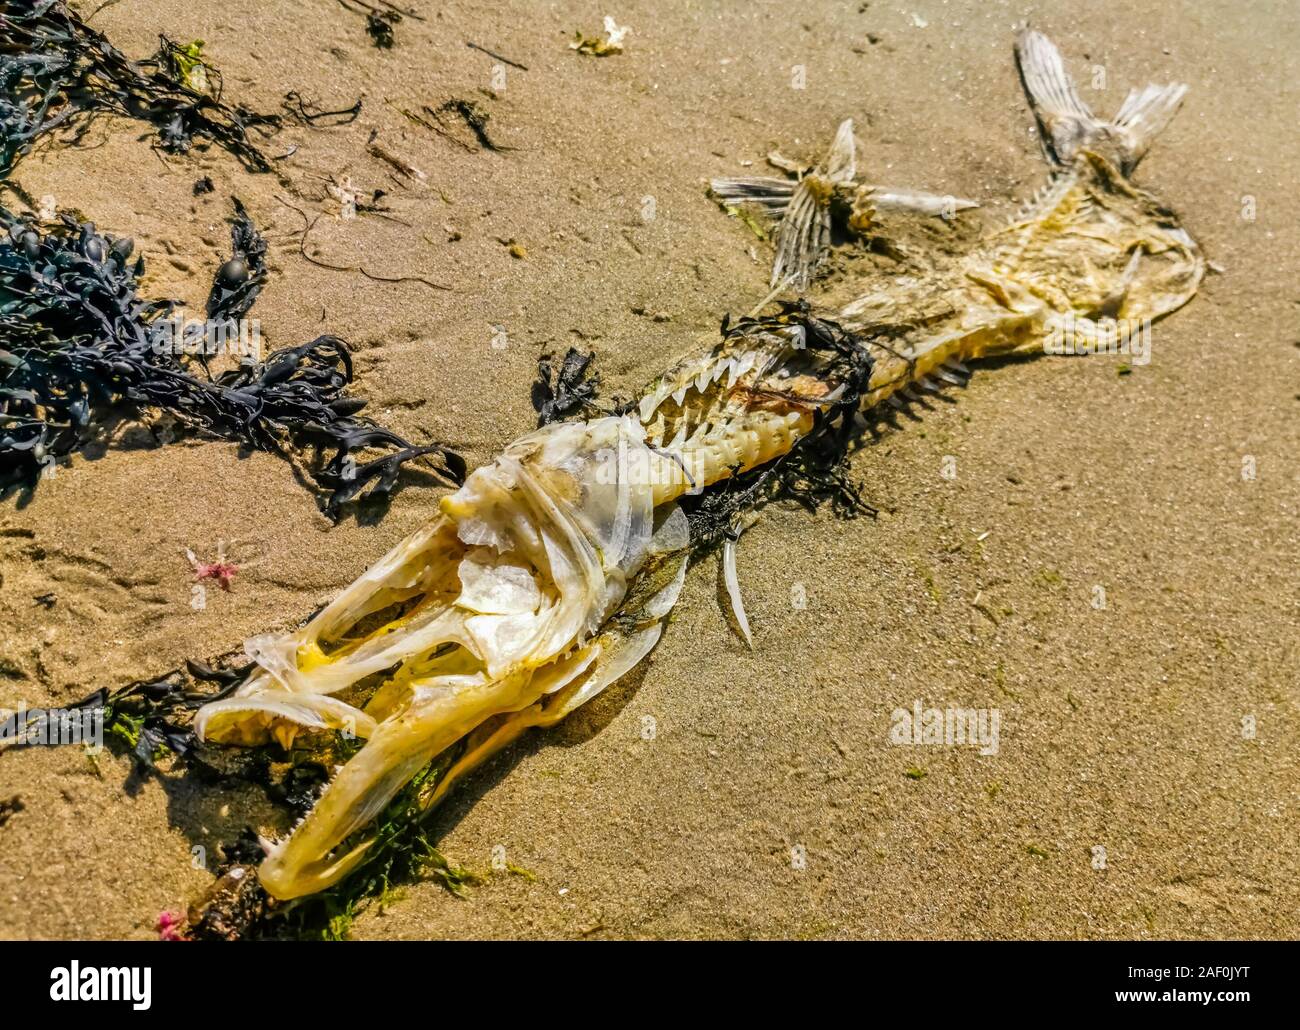 Squelette de poissons échoués, la mort du poisson sur la côte, reste d'un poisson avec des dents pointues Banque D'Images